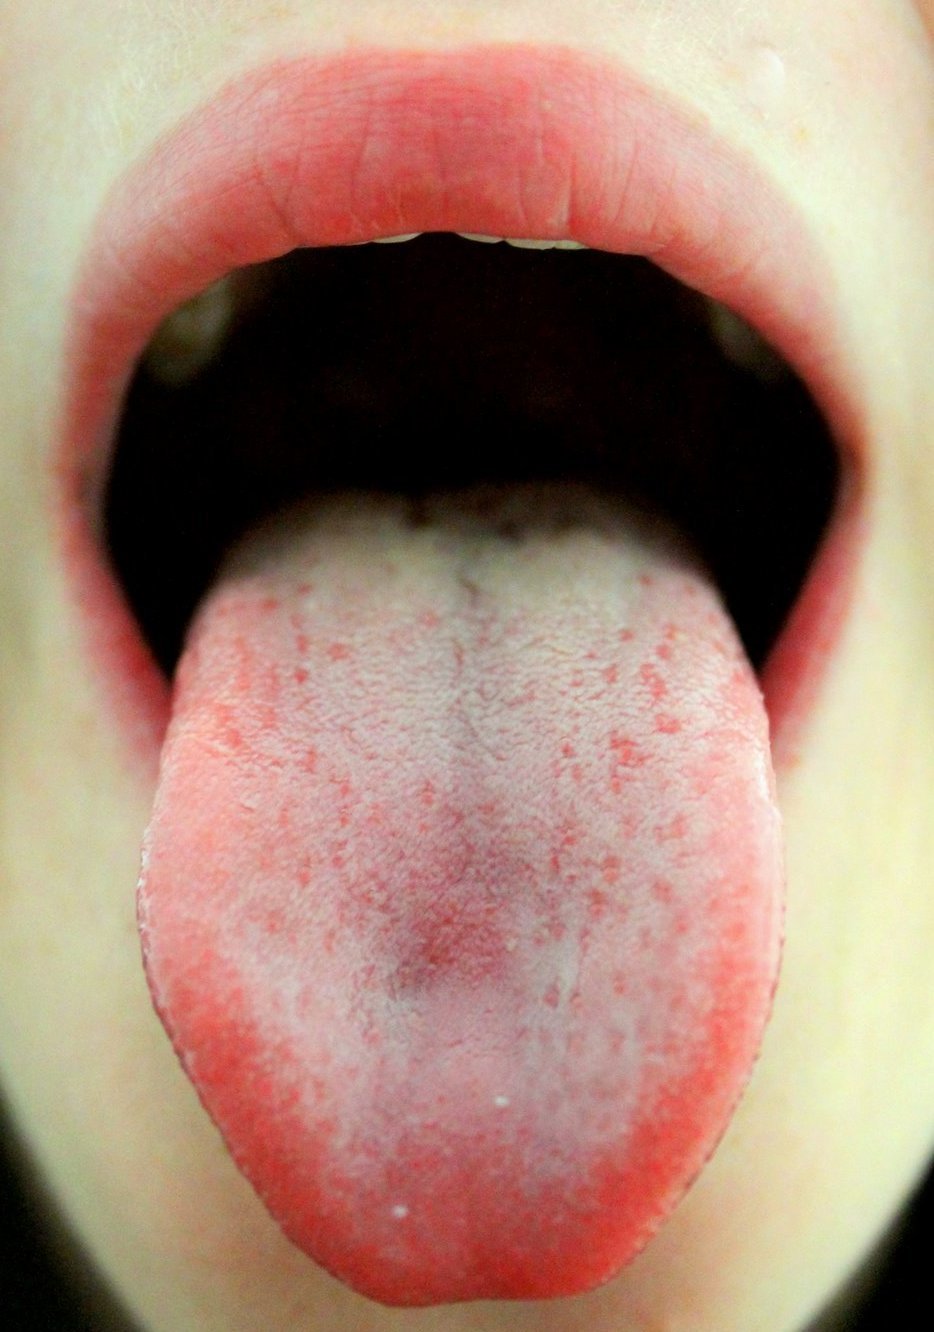 Persona con la boca abierta y lengua afuera | Imagen tomada de: Wikimedia Commons